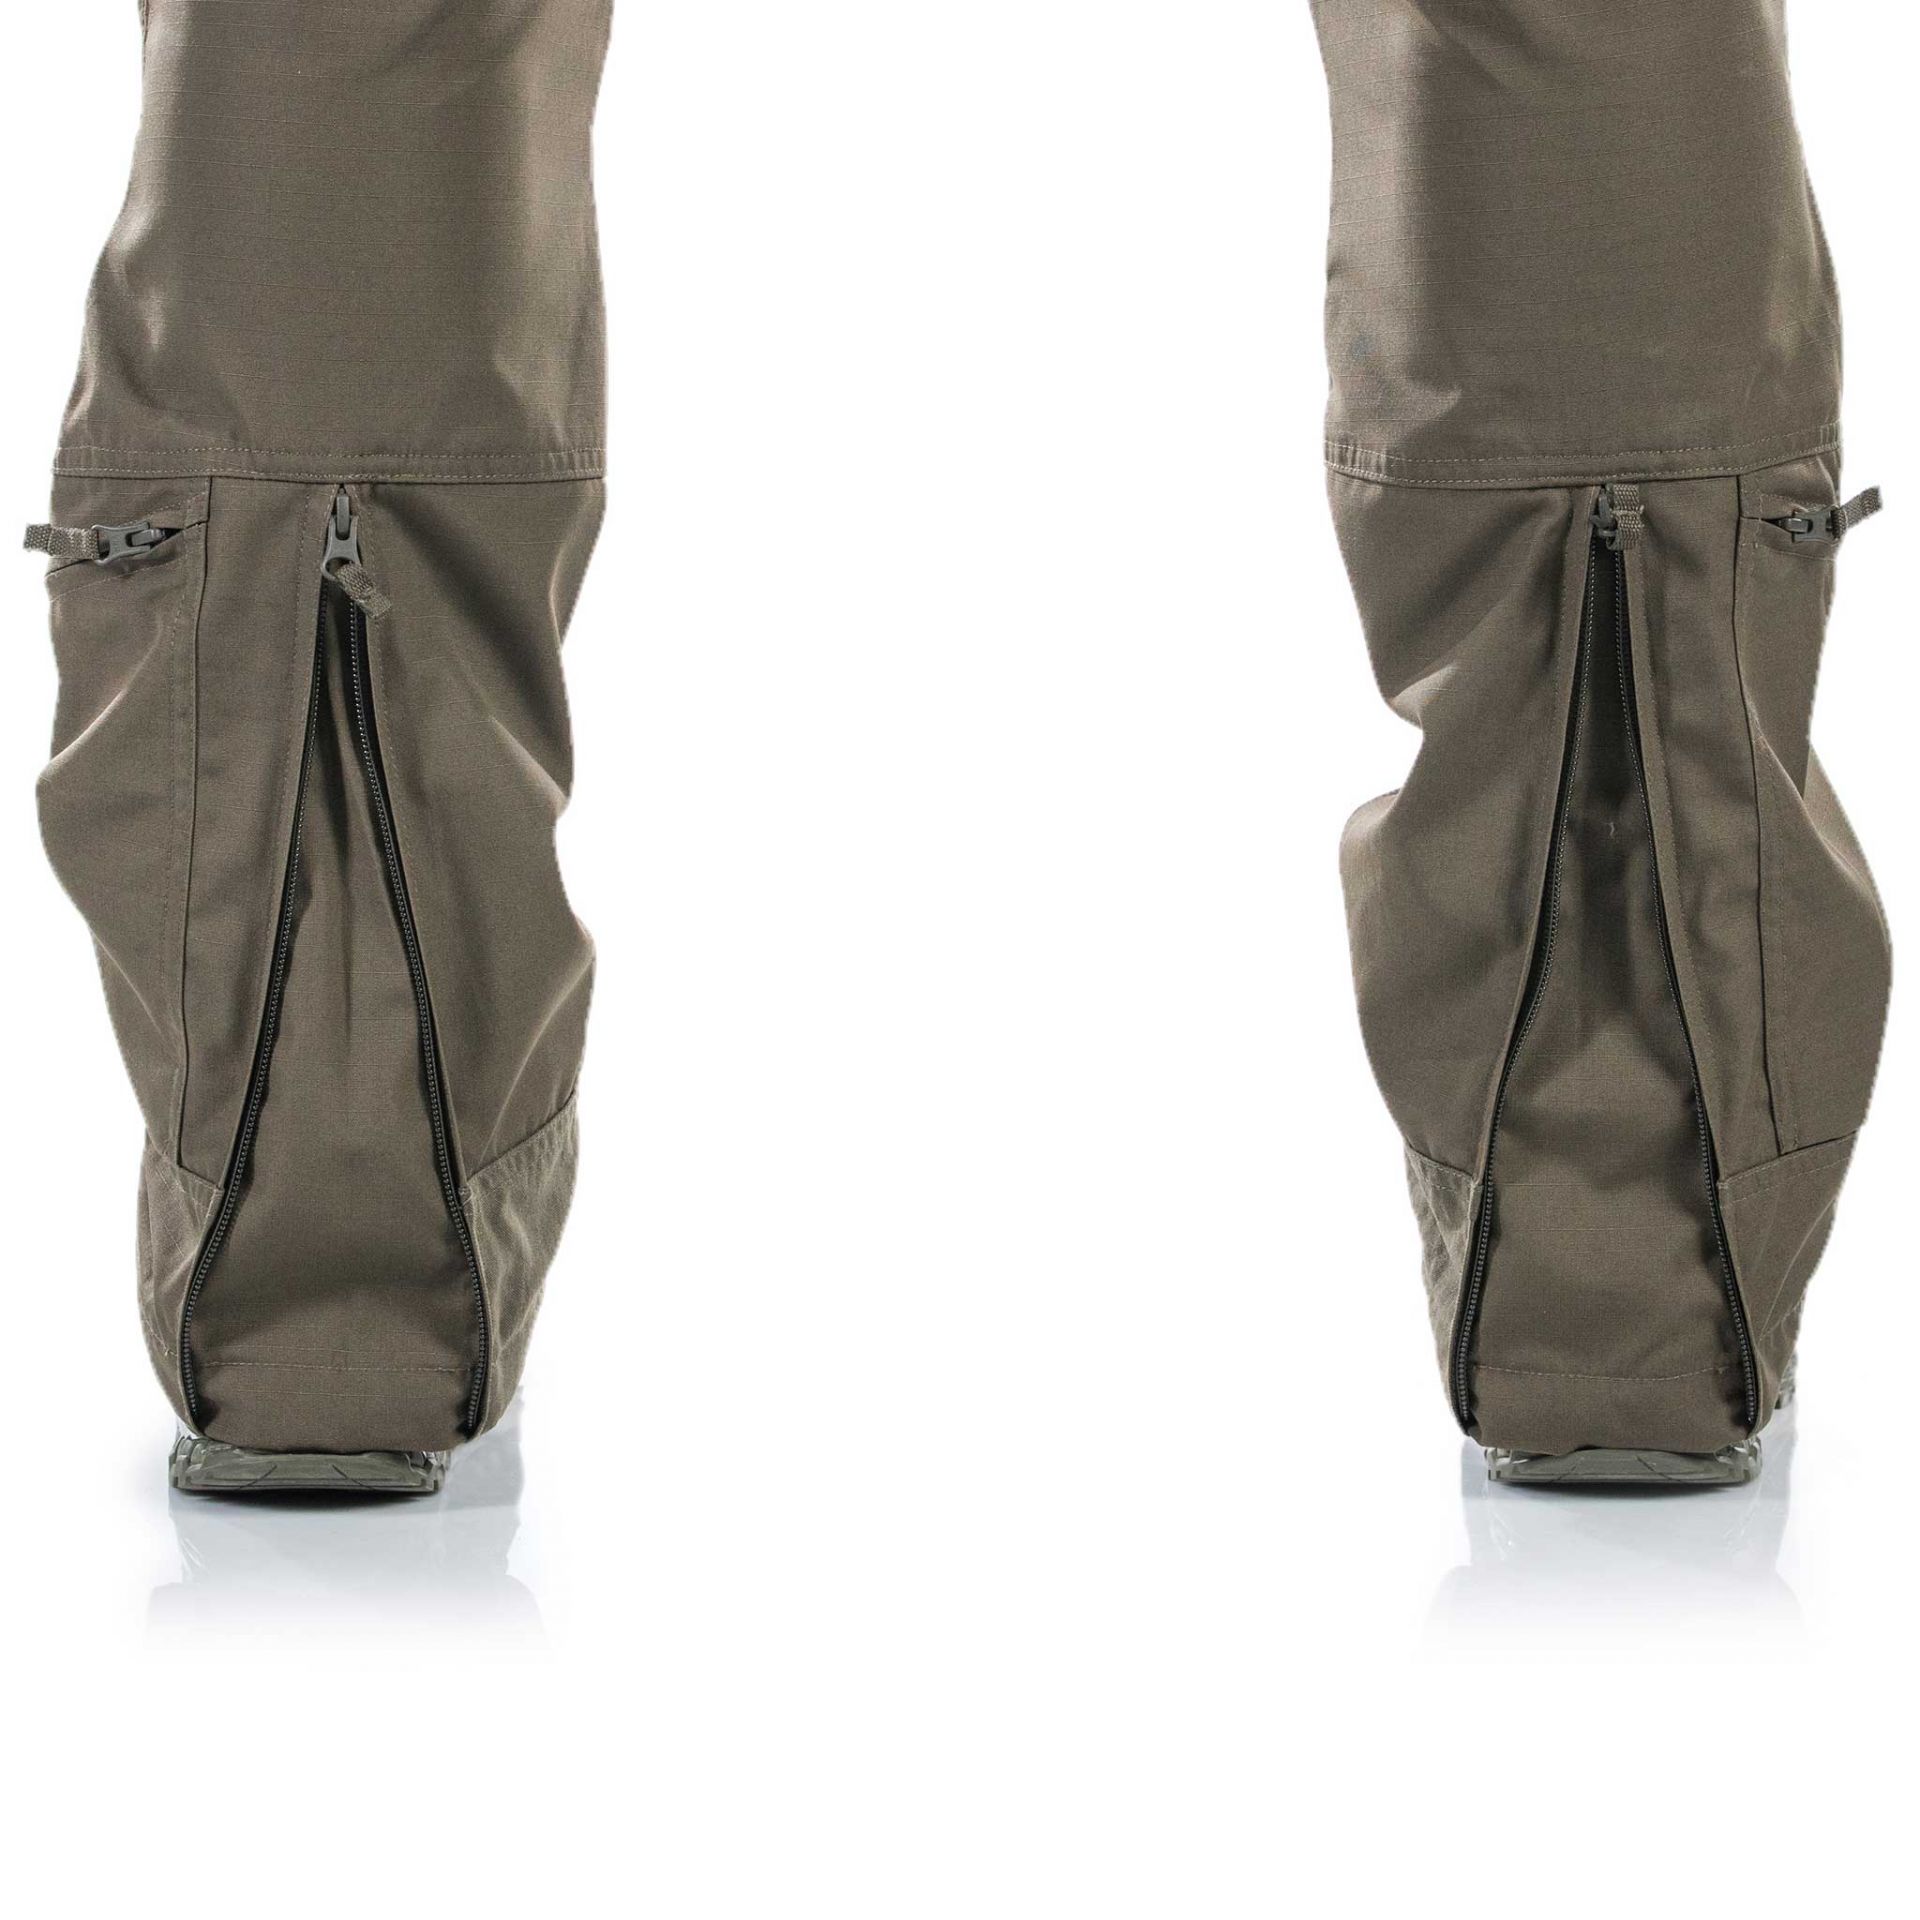 Striker XT Gen.3 Combat Pants | Best combat pants for military 